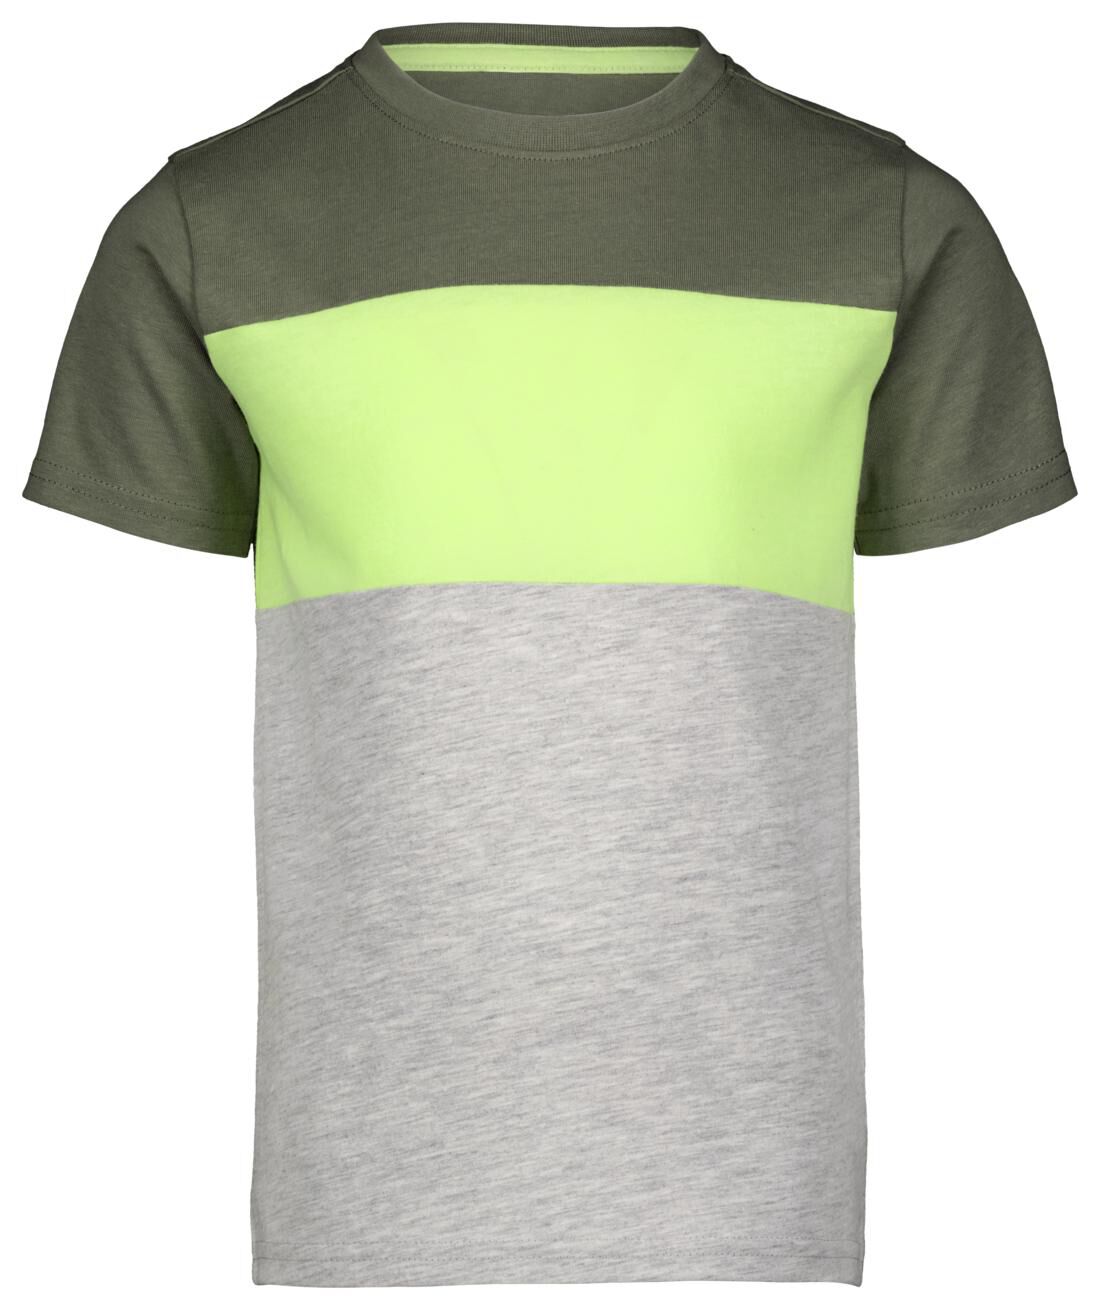 HEMA Kinder T-shirt Kleurblokken Groen (groen)